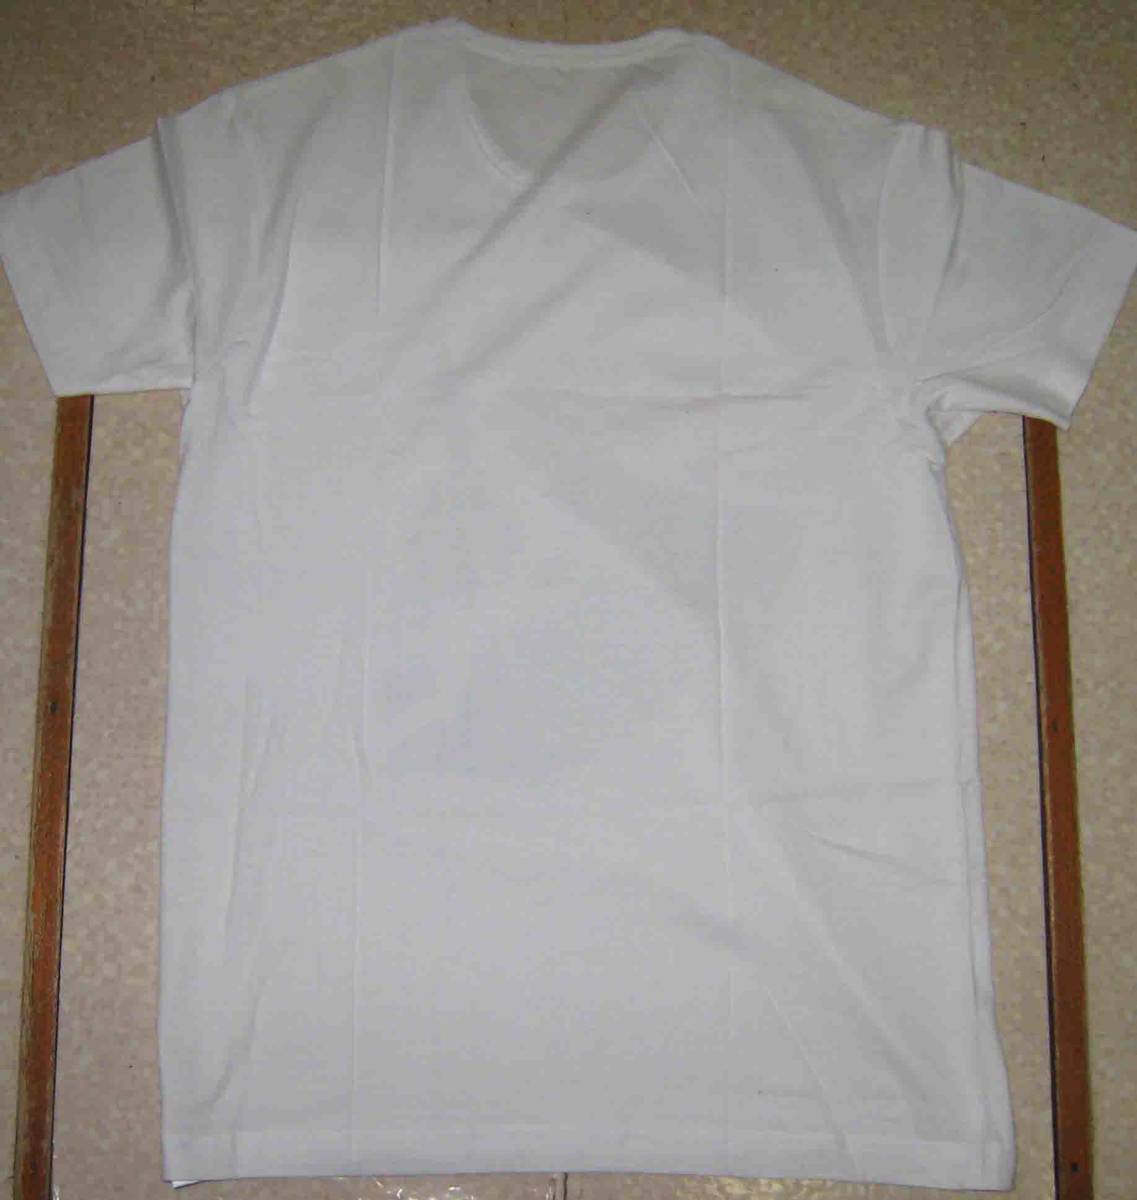  THE CLASH　ザ・クラッシュ　PUNK　パンク　★　Tシャツ　白地に黒と赤　M.　L.　2L　3L　の4サイズ有り_画像3